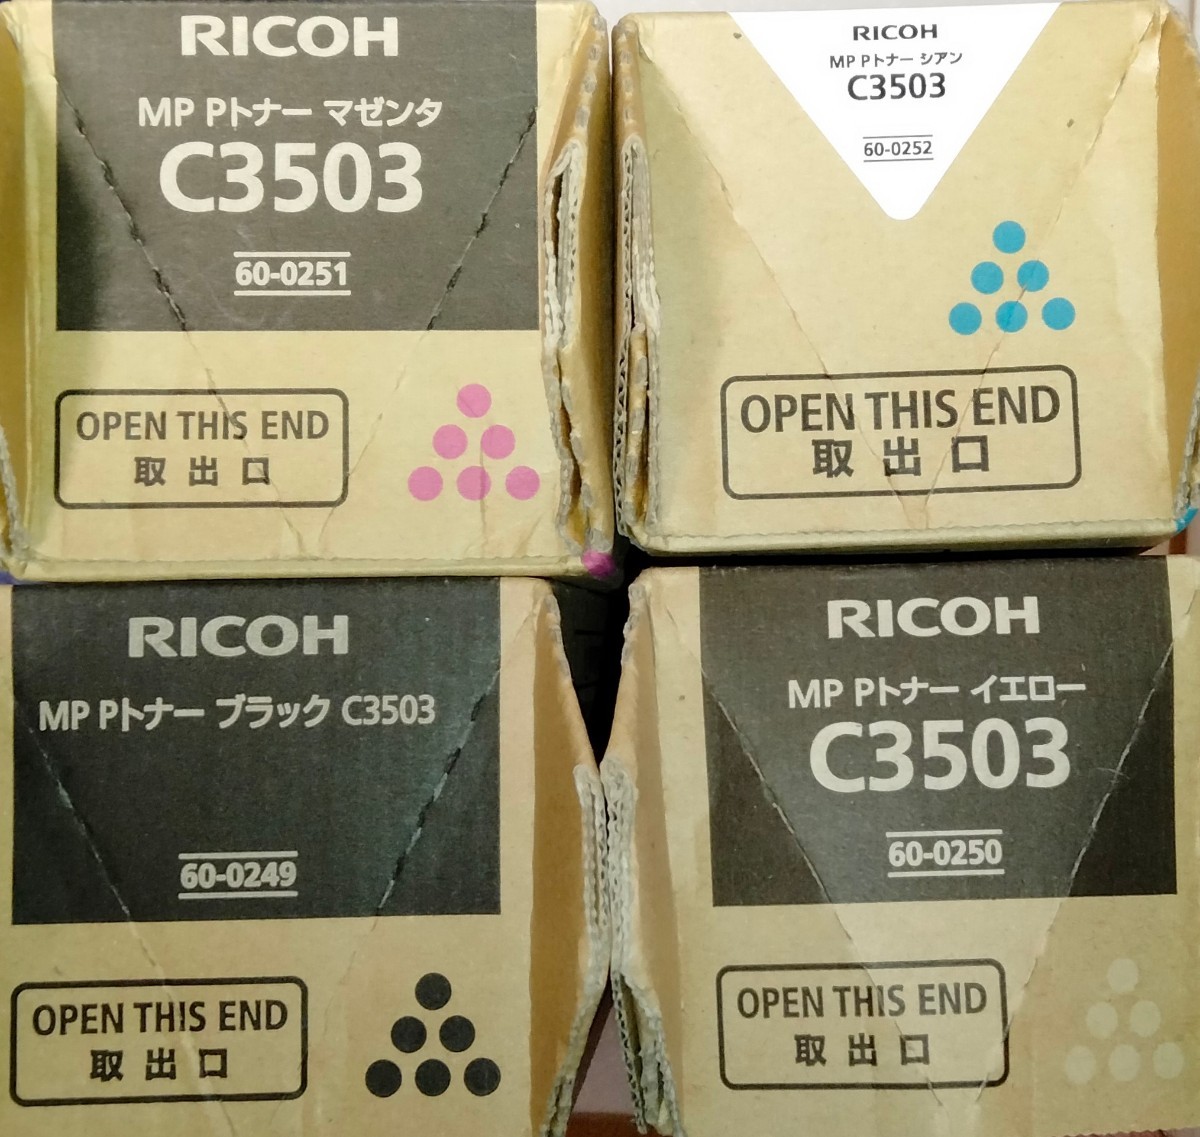 新品未使用 純正品 RICOH リコー C3503 MP Pトナー ブラック シアン